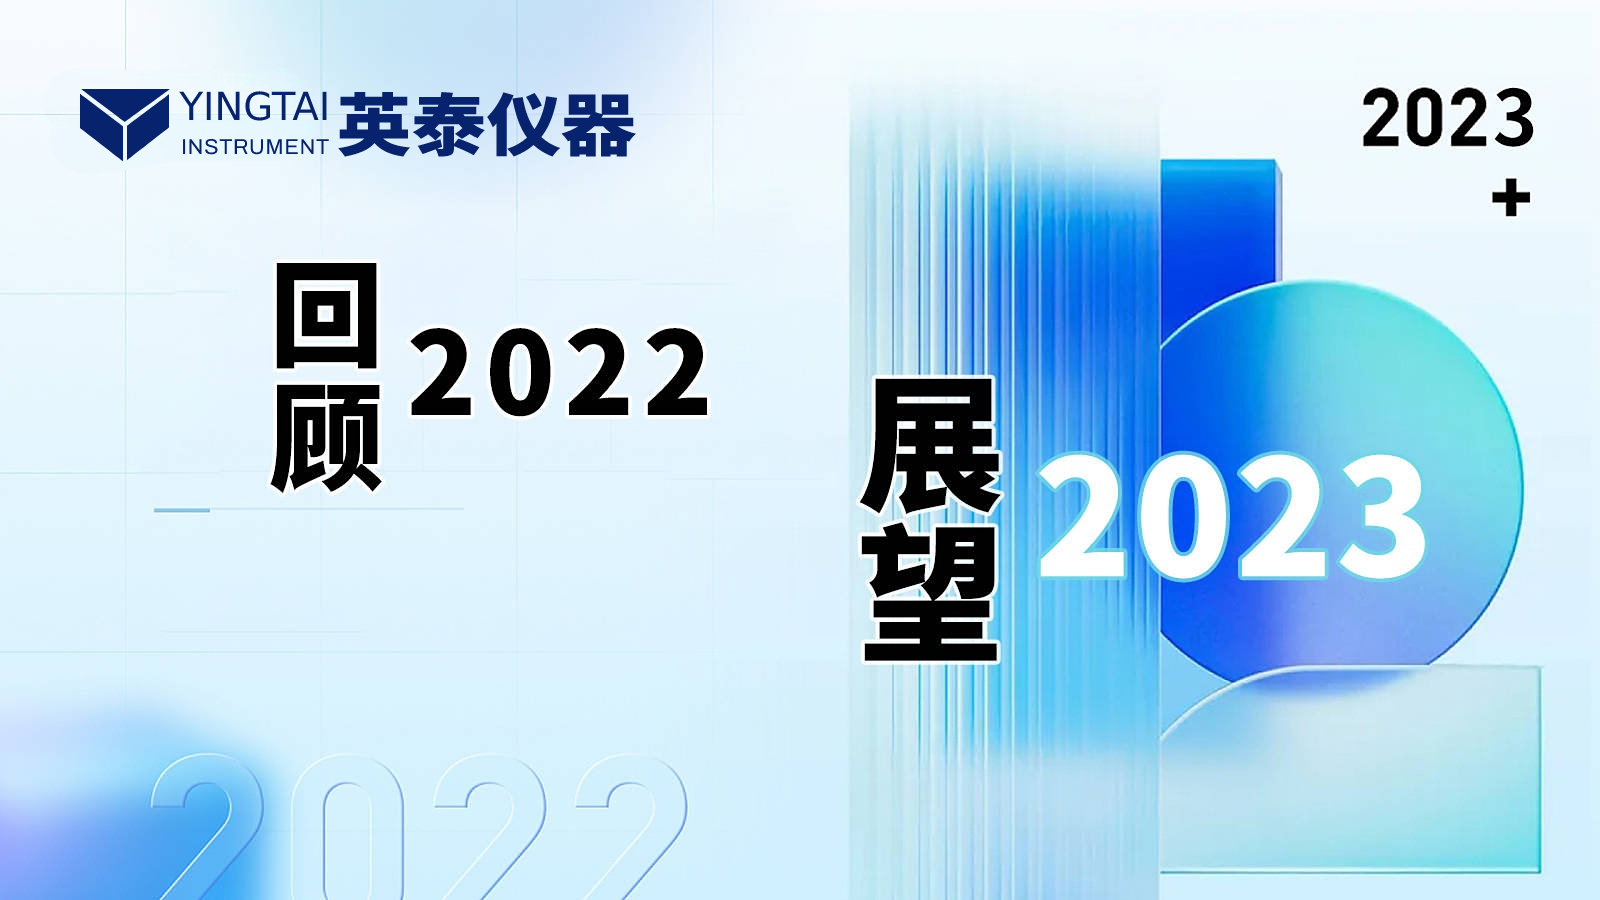 長沙英泰儀器有限公司——回顧2022，展望2023